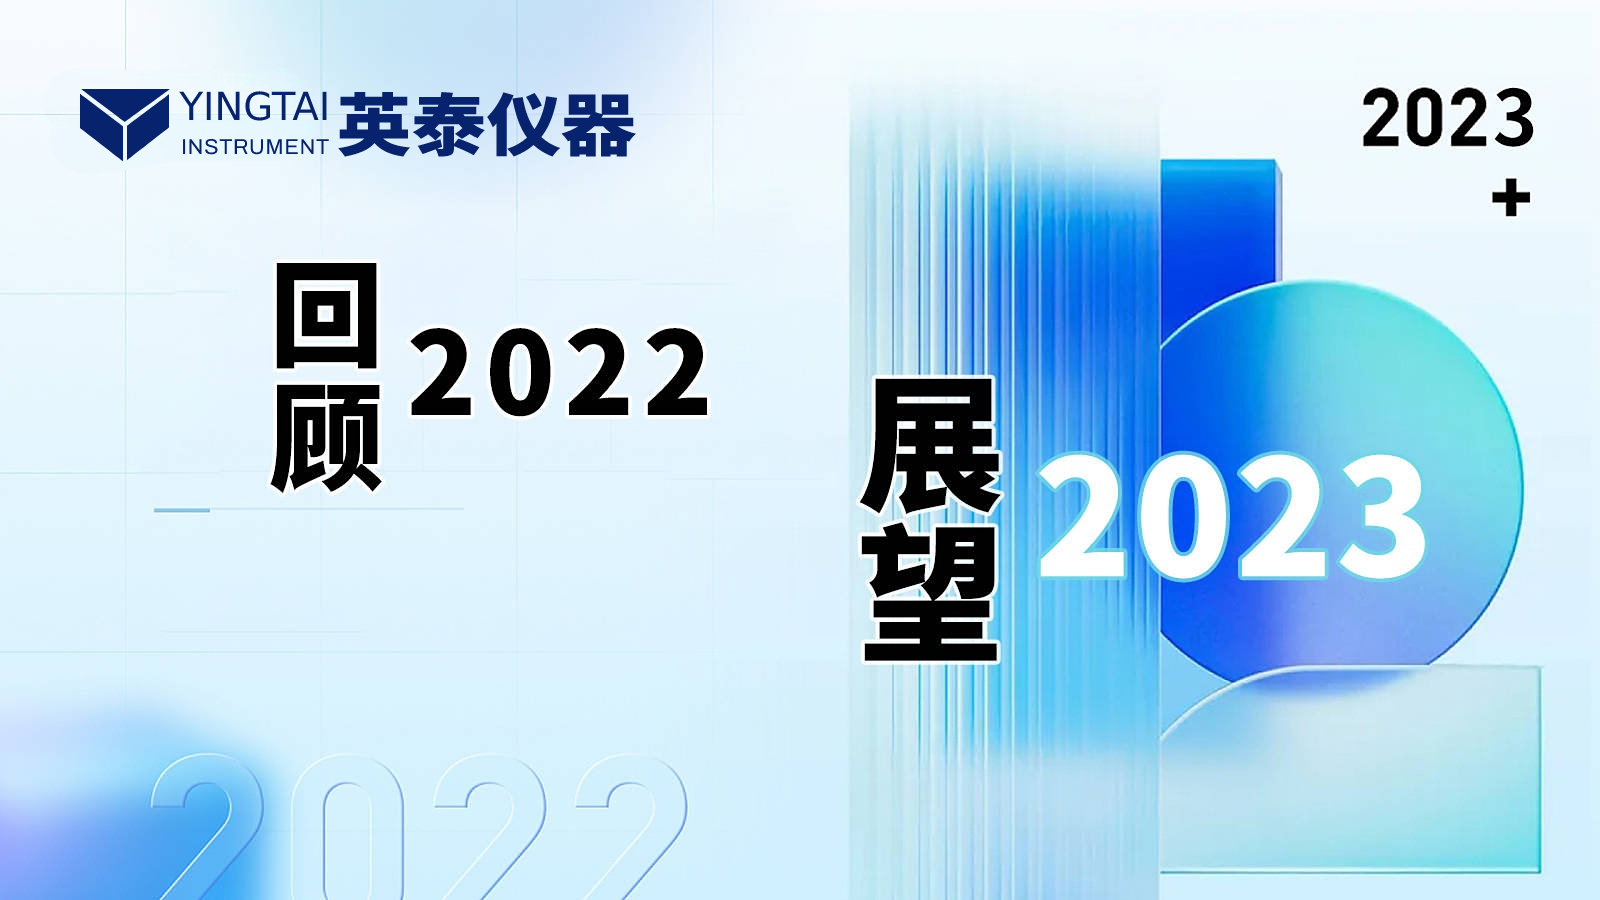 長沙英泰儀器有限公司——回顧2022，展望2023